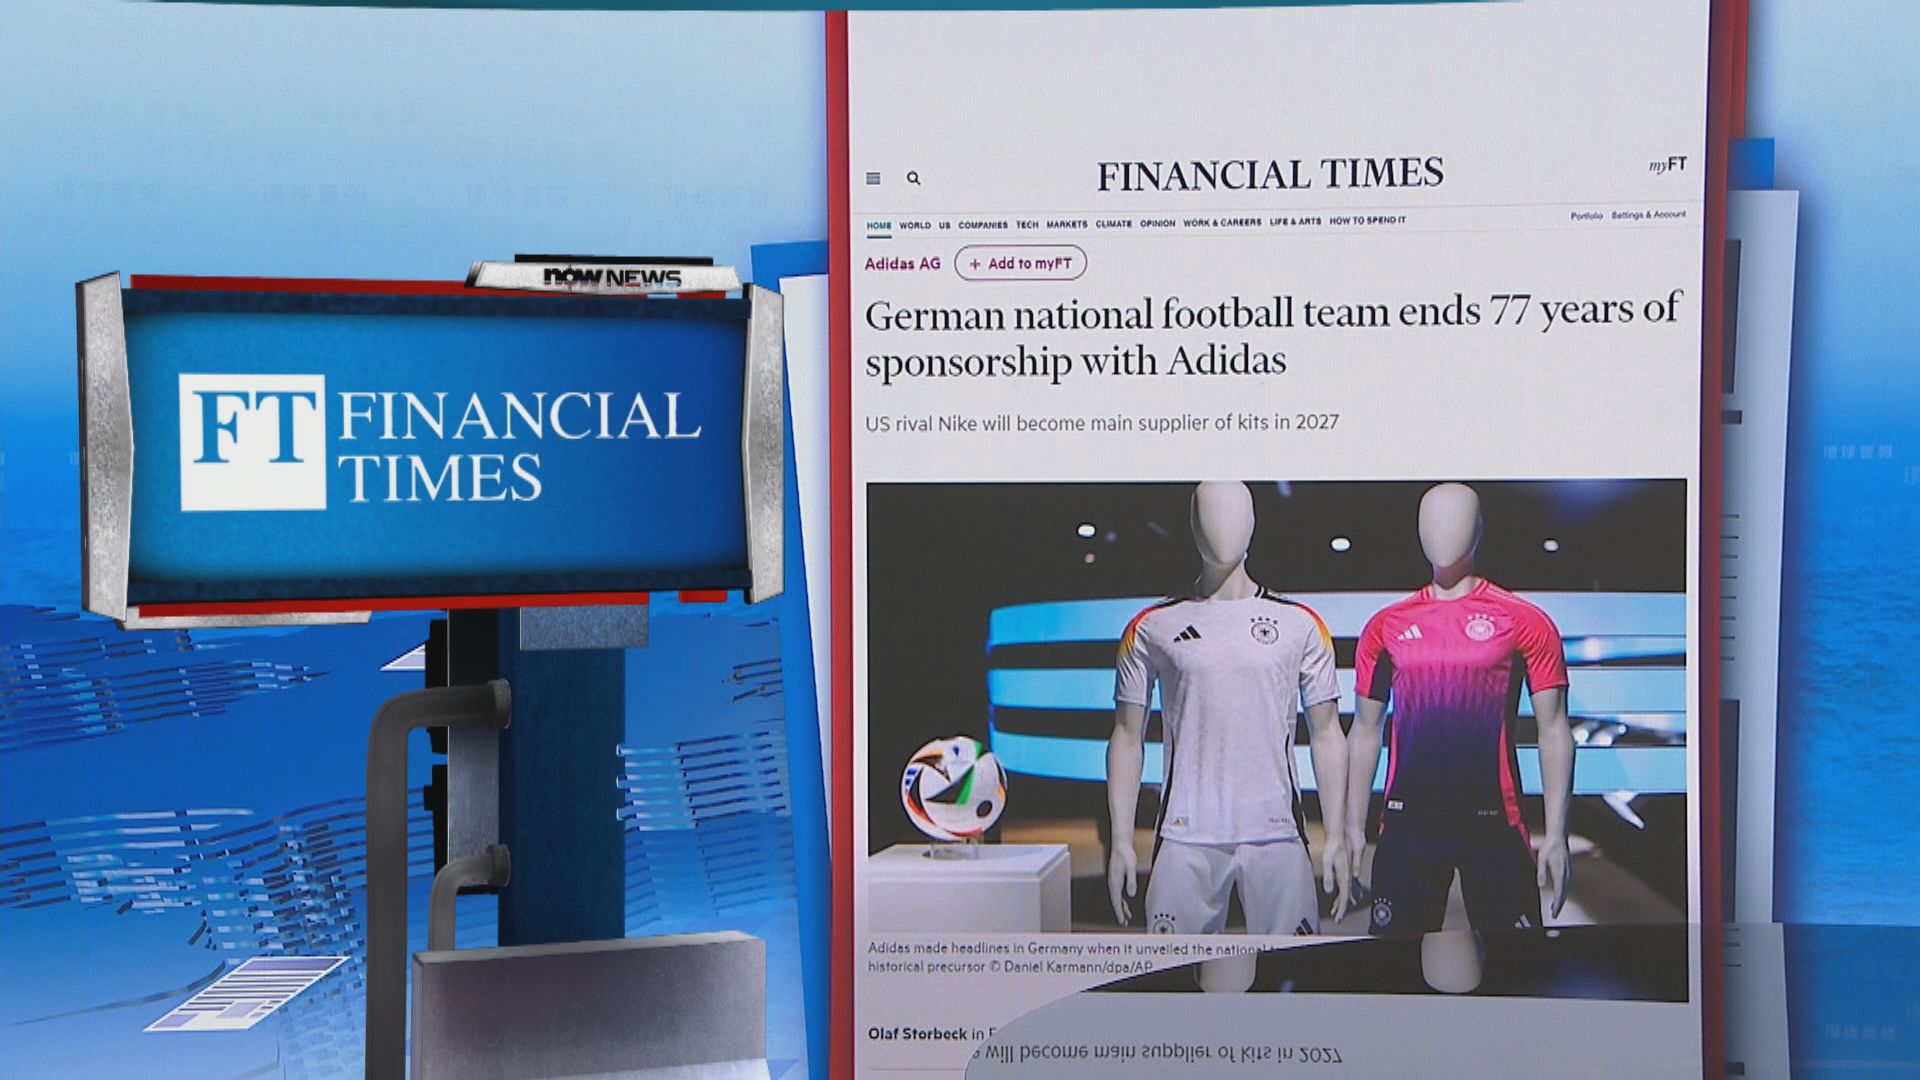 【環球薈報】德國國家隊2027年起與adidas結束70年合作關係